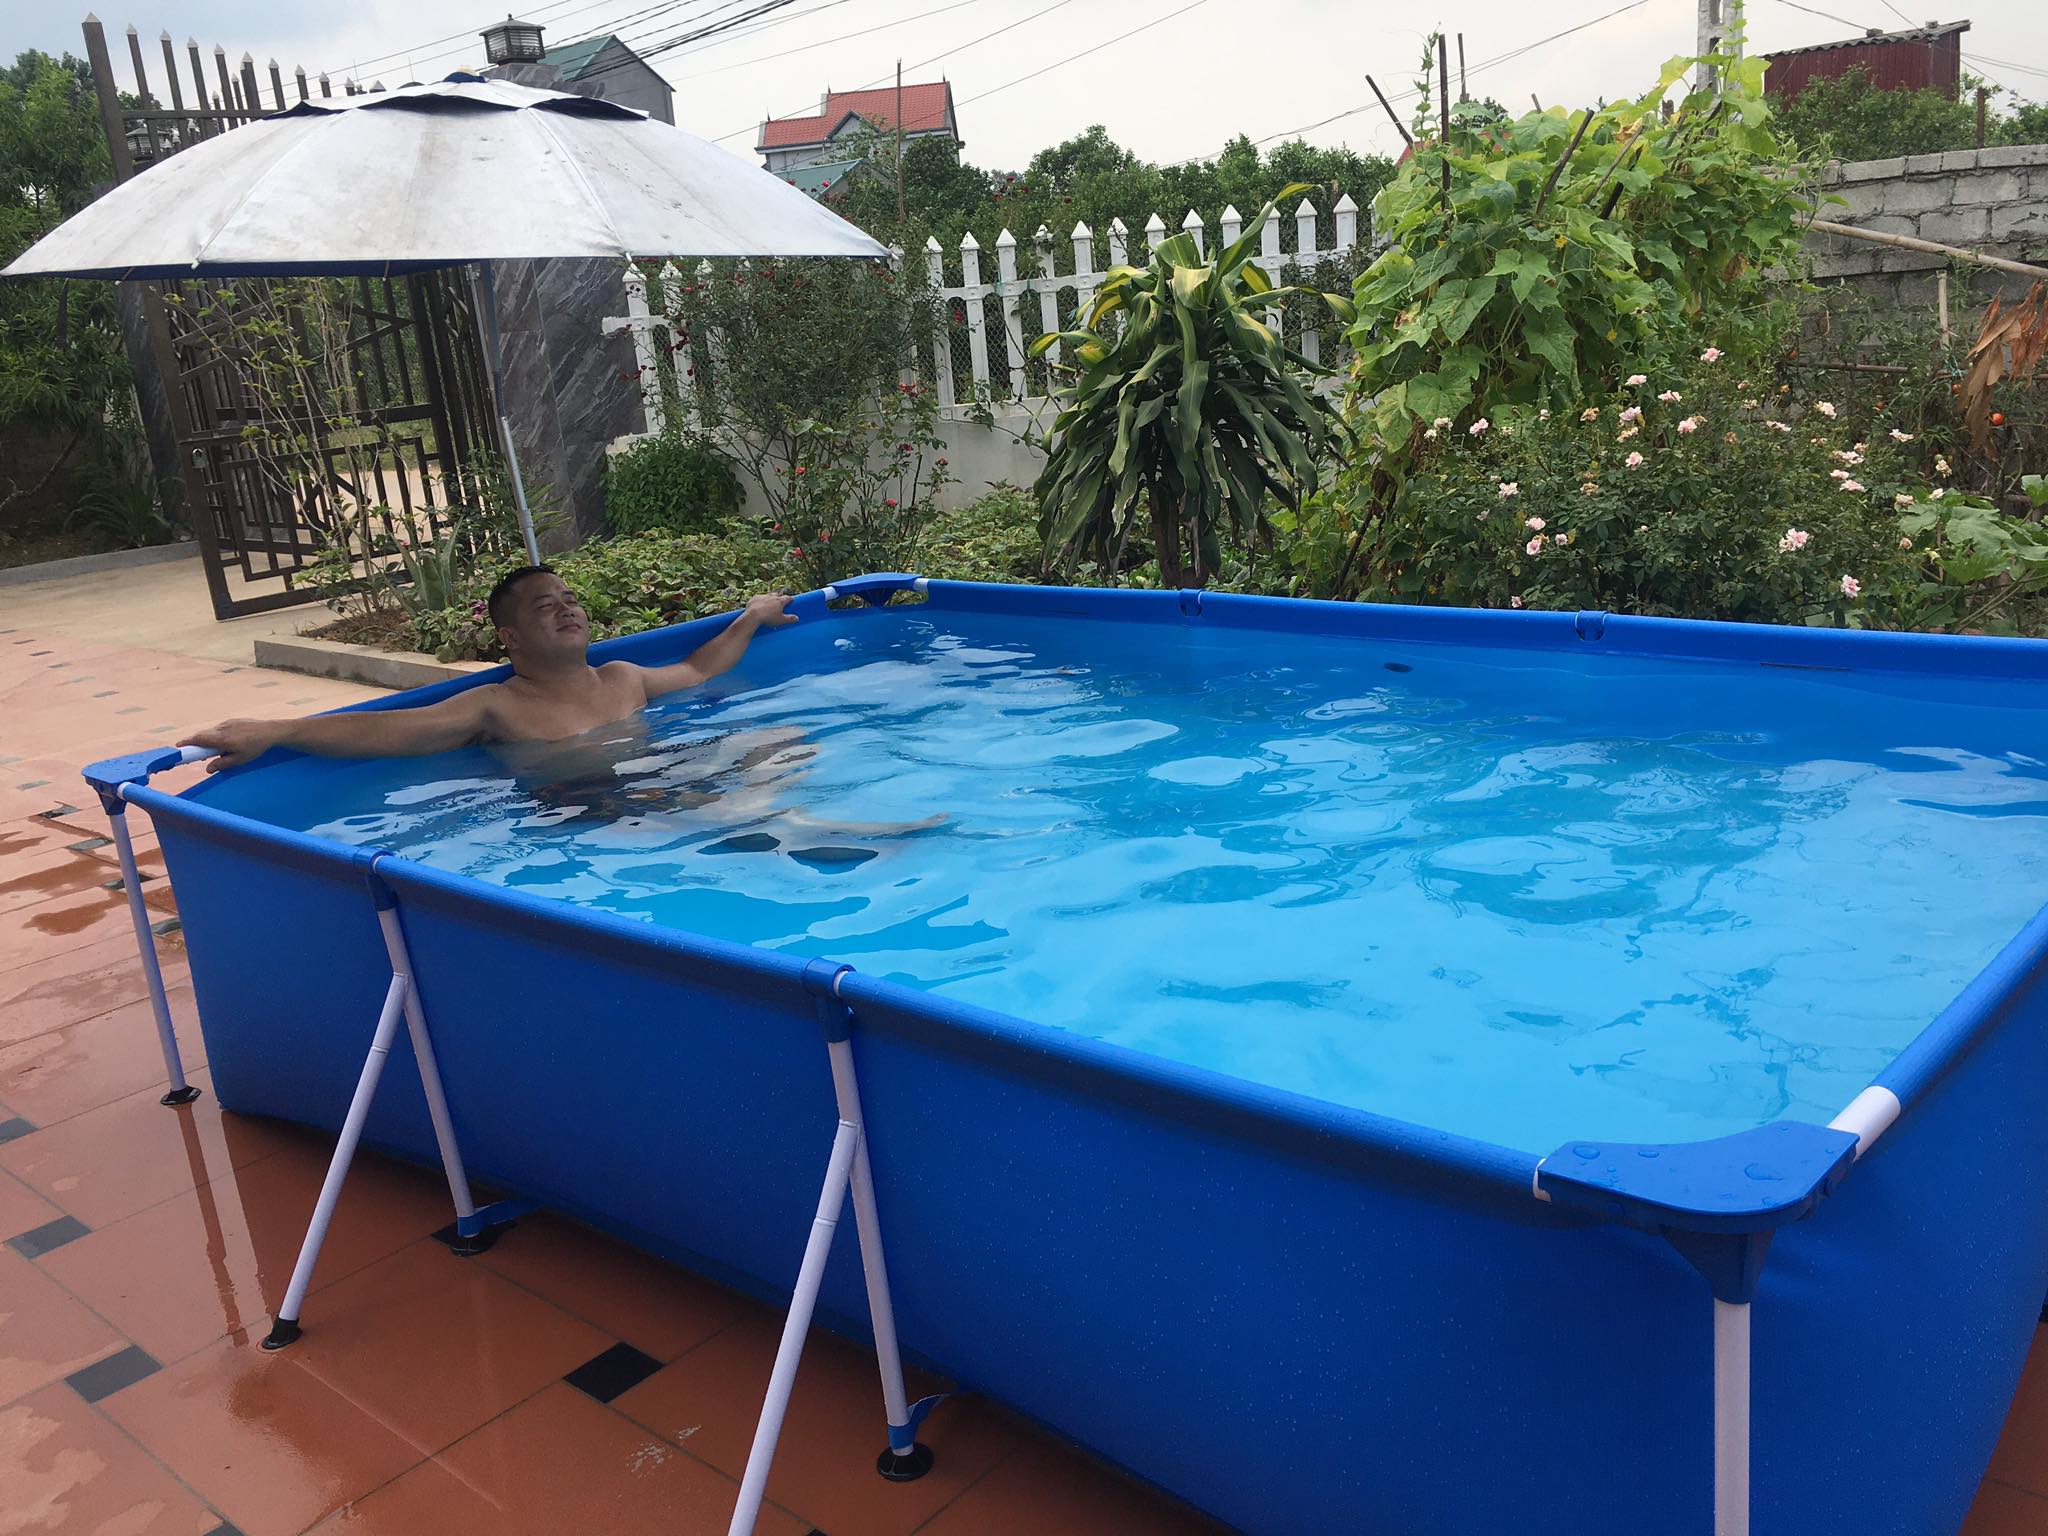 Bể bơi khung kim loại 3m x 2m x 66cm mã 56404 dành cho bé